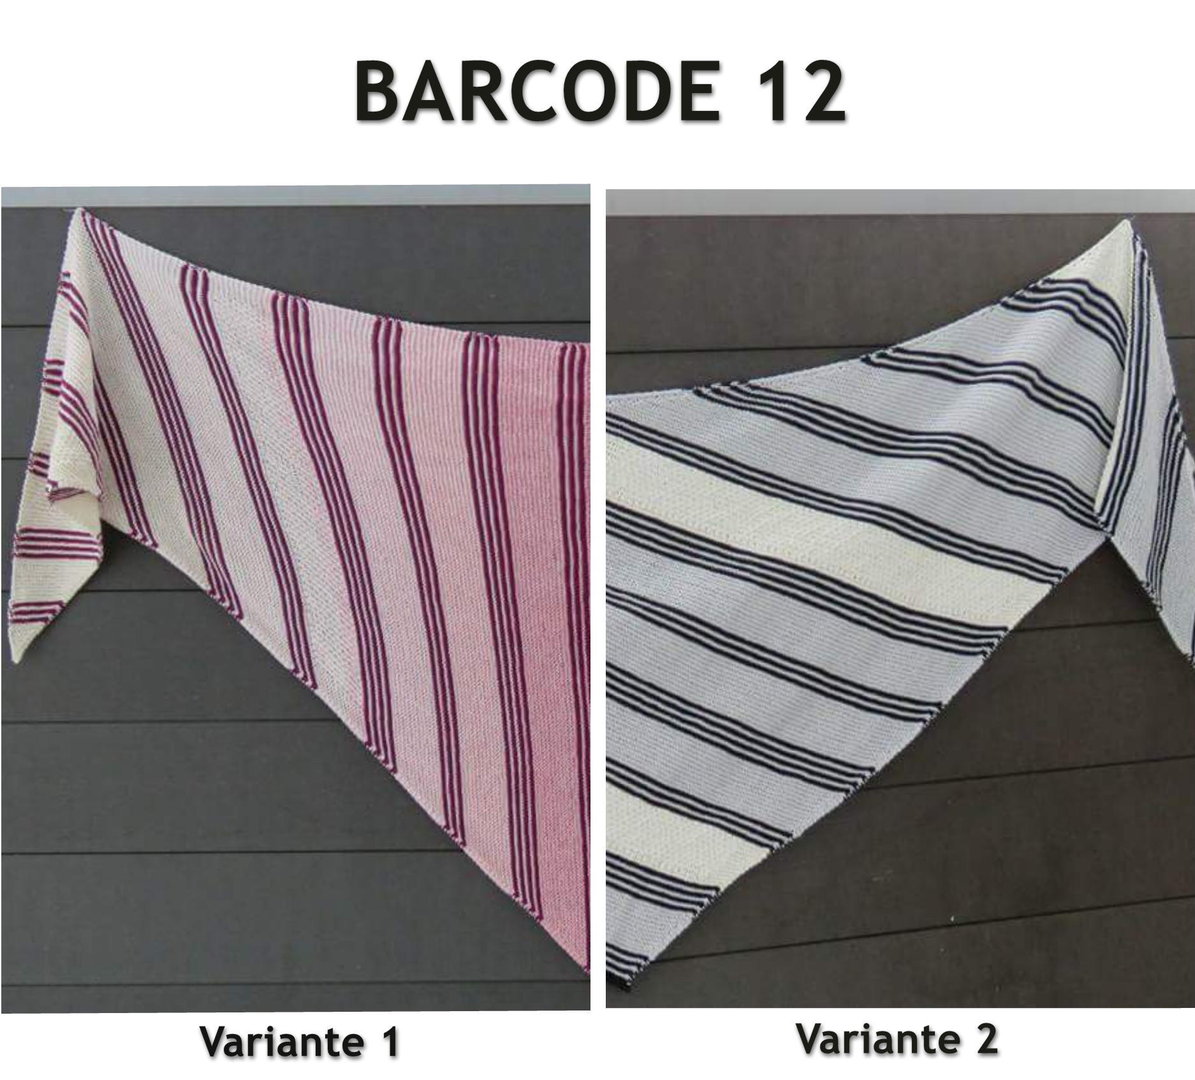 BARCODE 12  -  Anleitung für beide Varianten